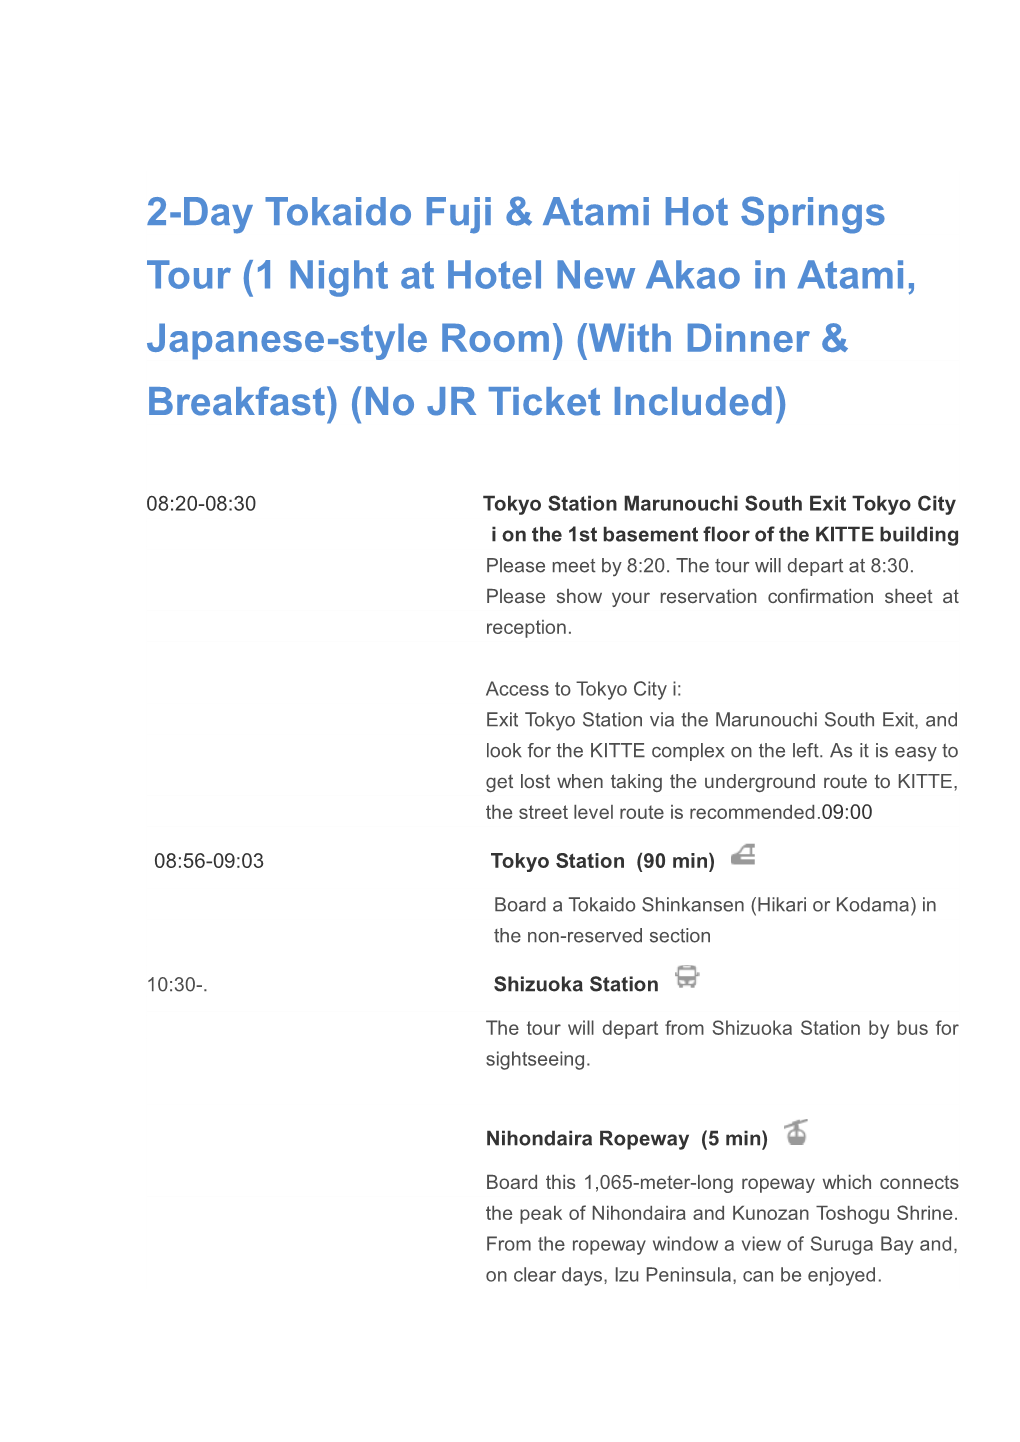 2-Day Tokaido Fuji & Atami Hot Springs Tour (1 Night at Hotel New